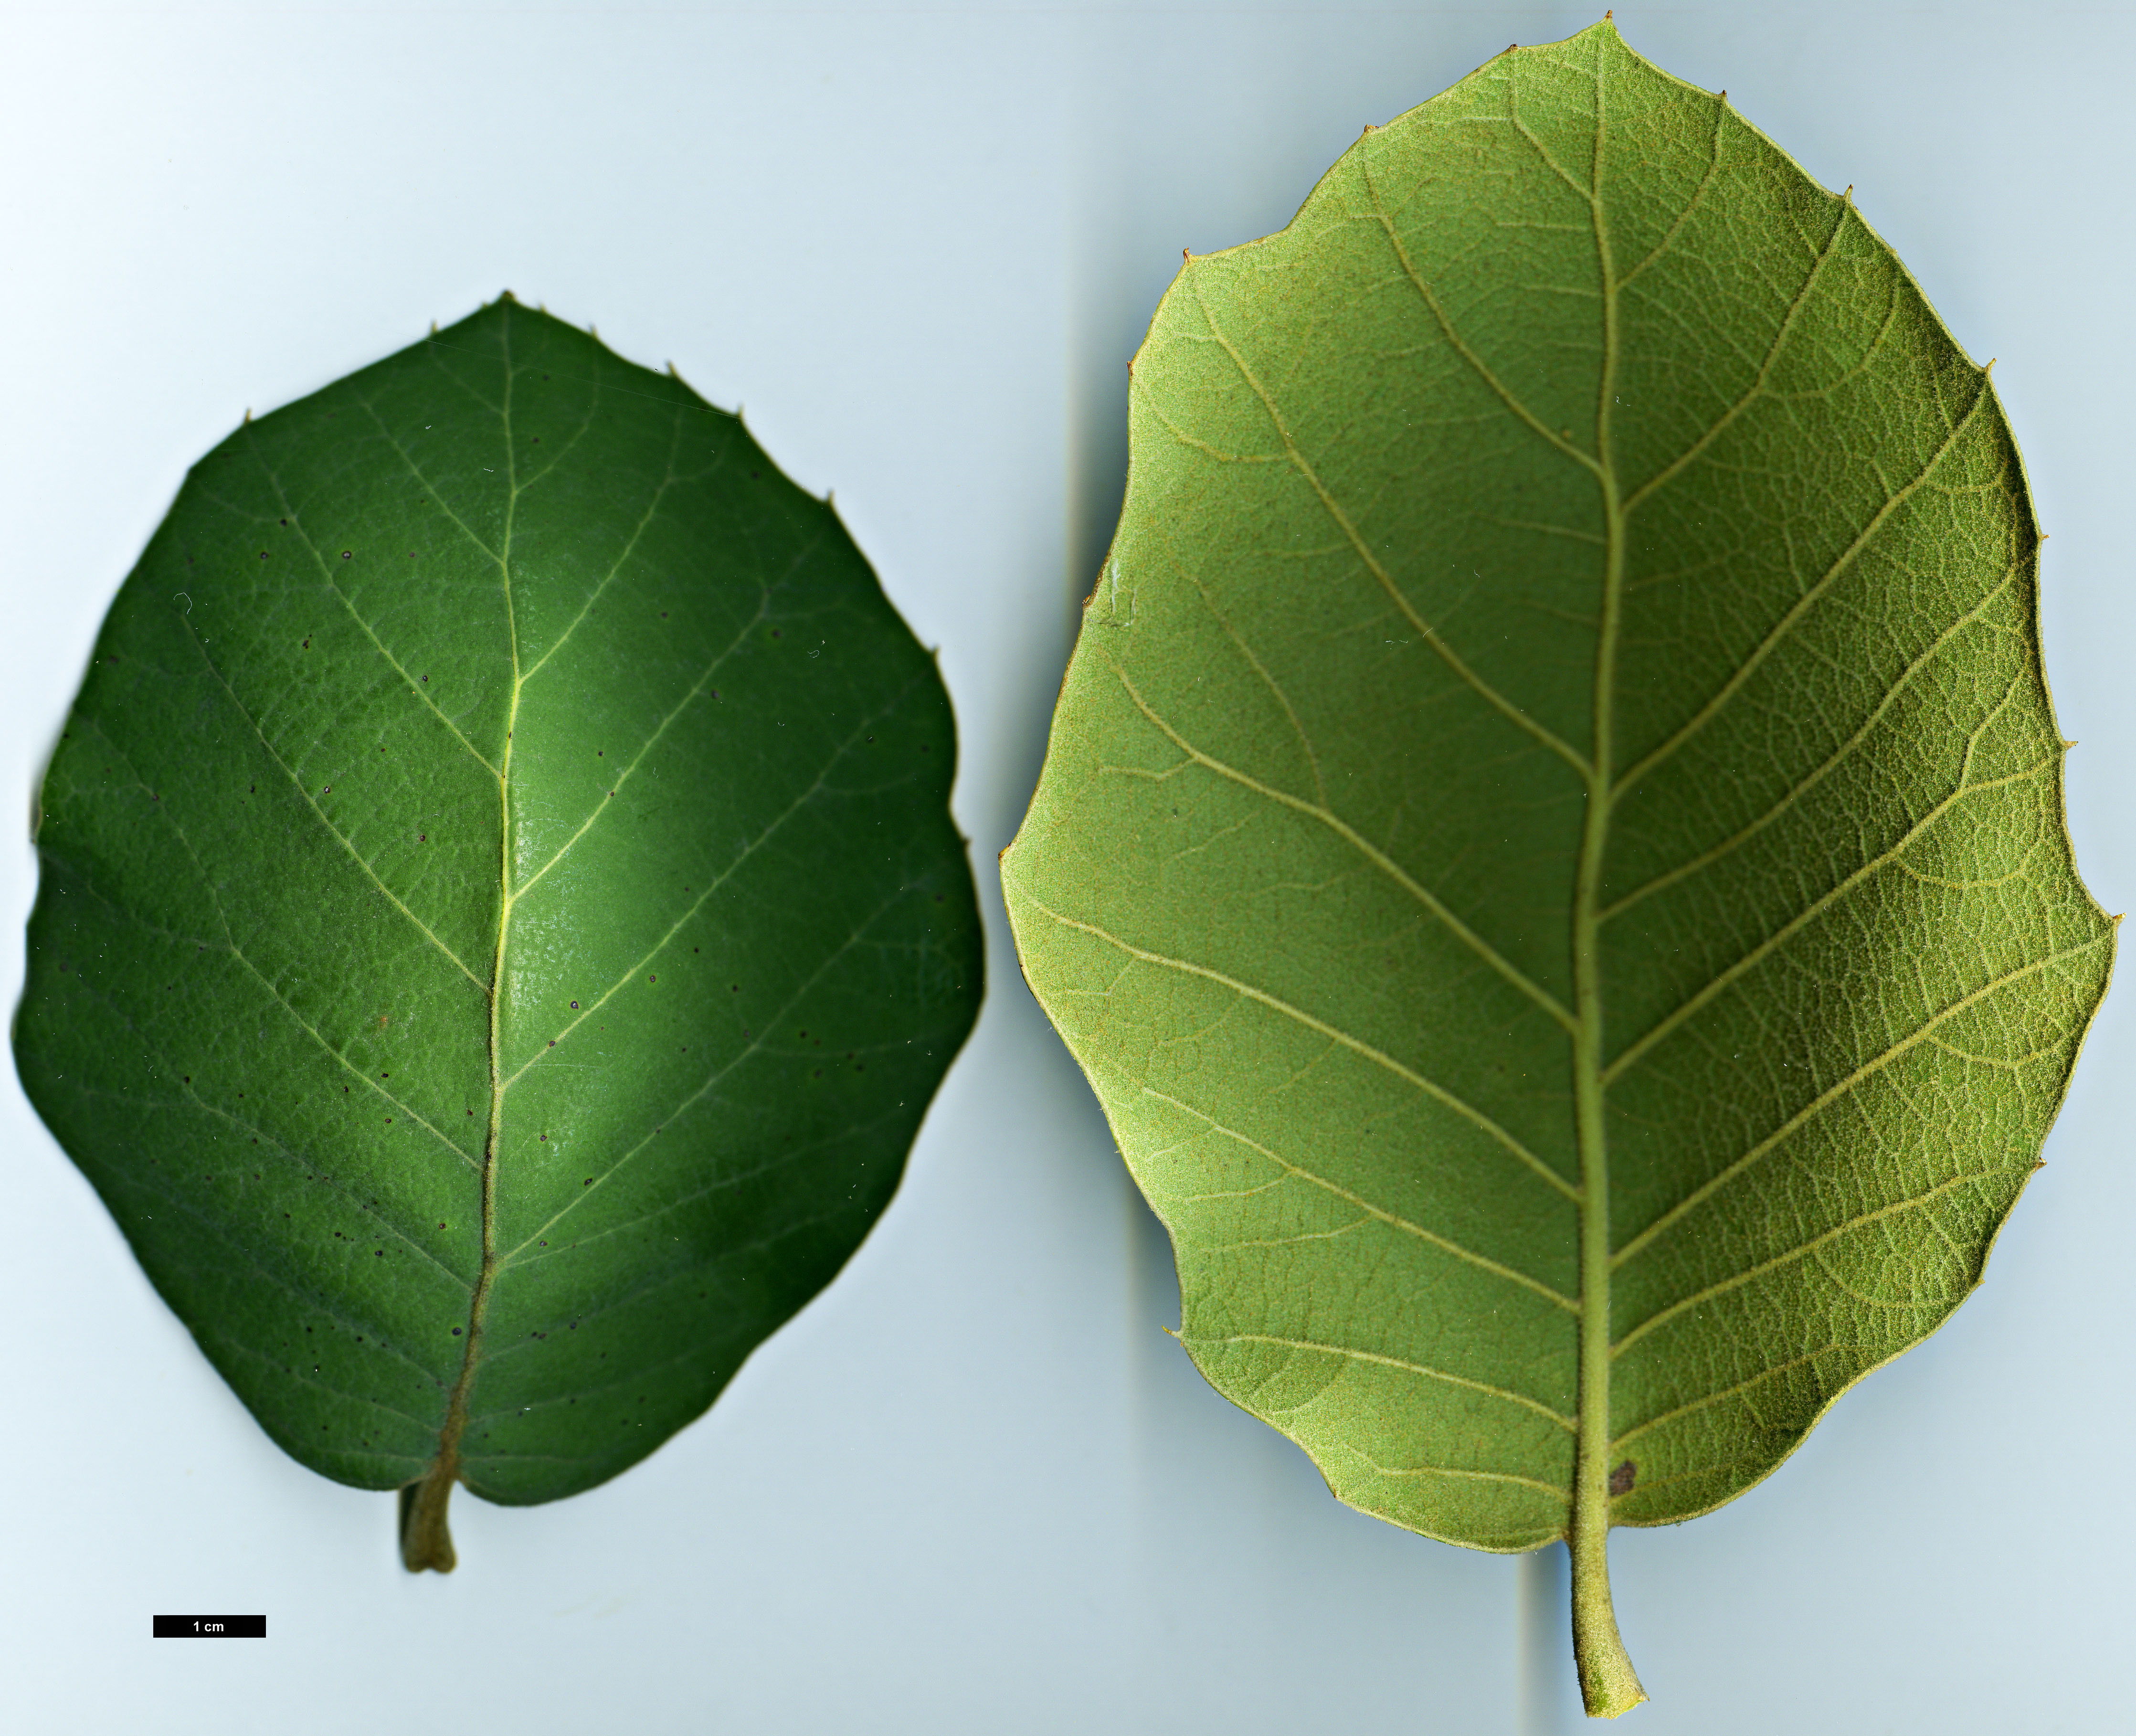 High resolution image: Family: Fagaceae - Genus: Quercus - Taxon: tarahumara